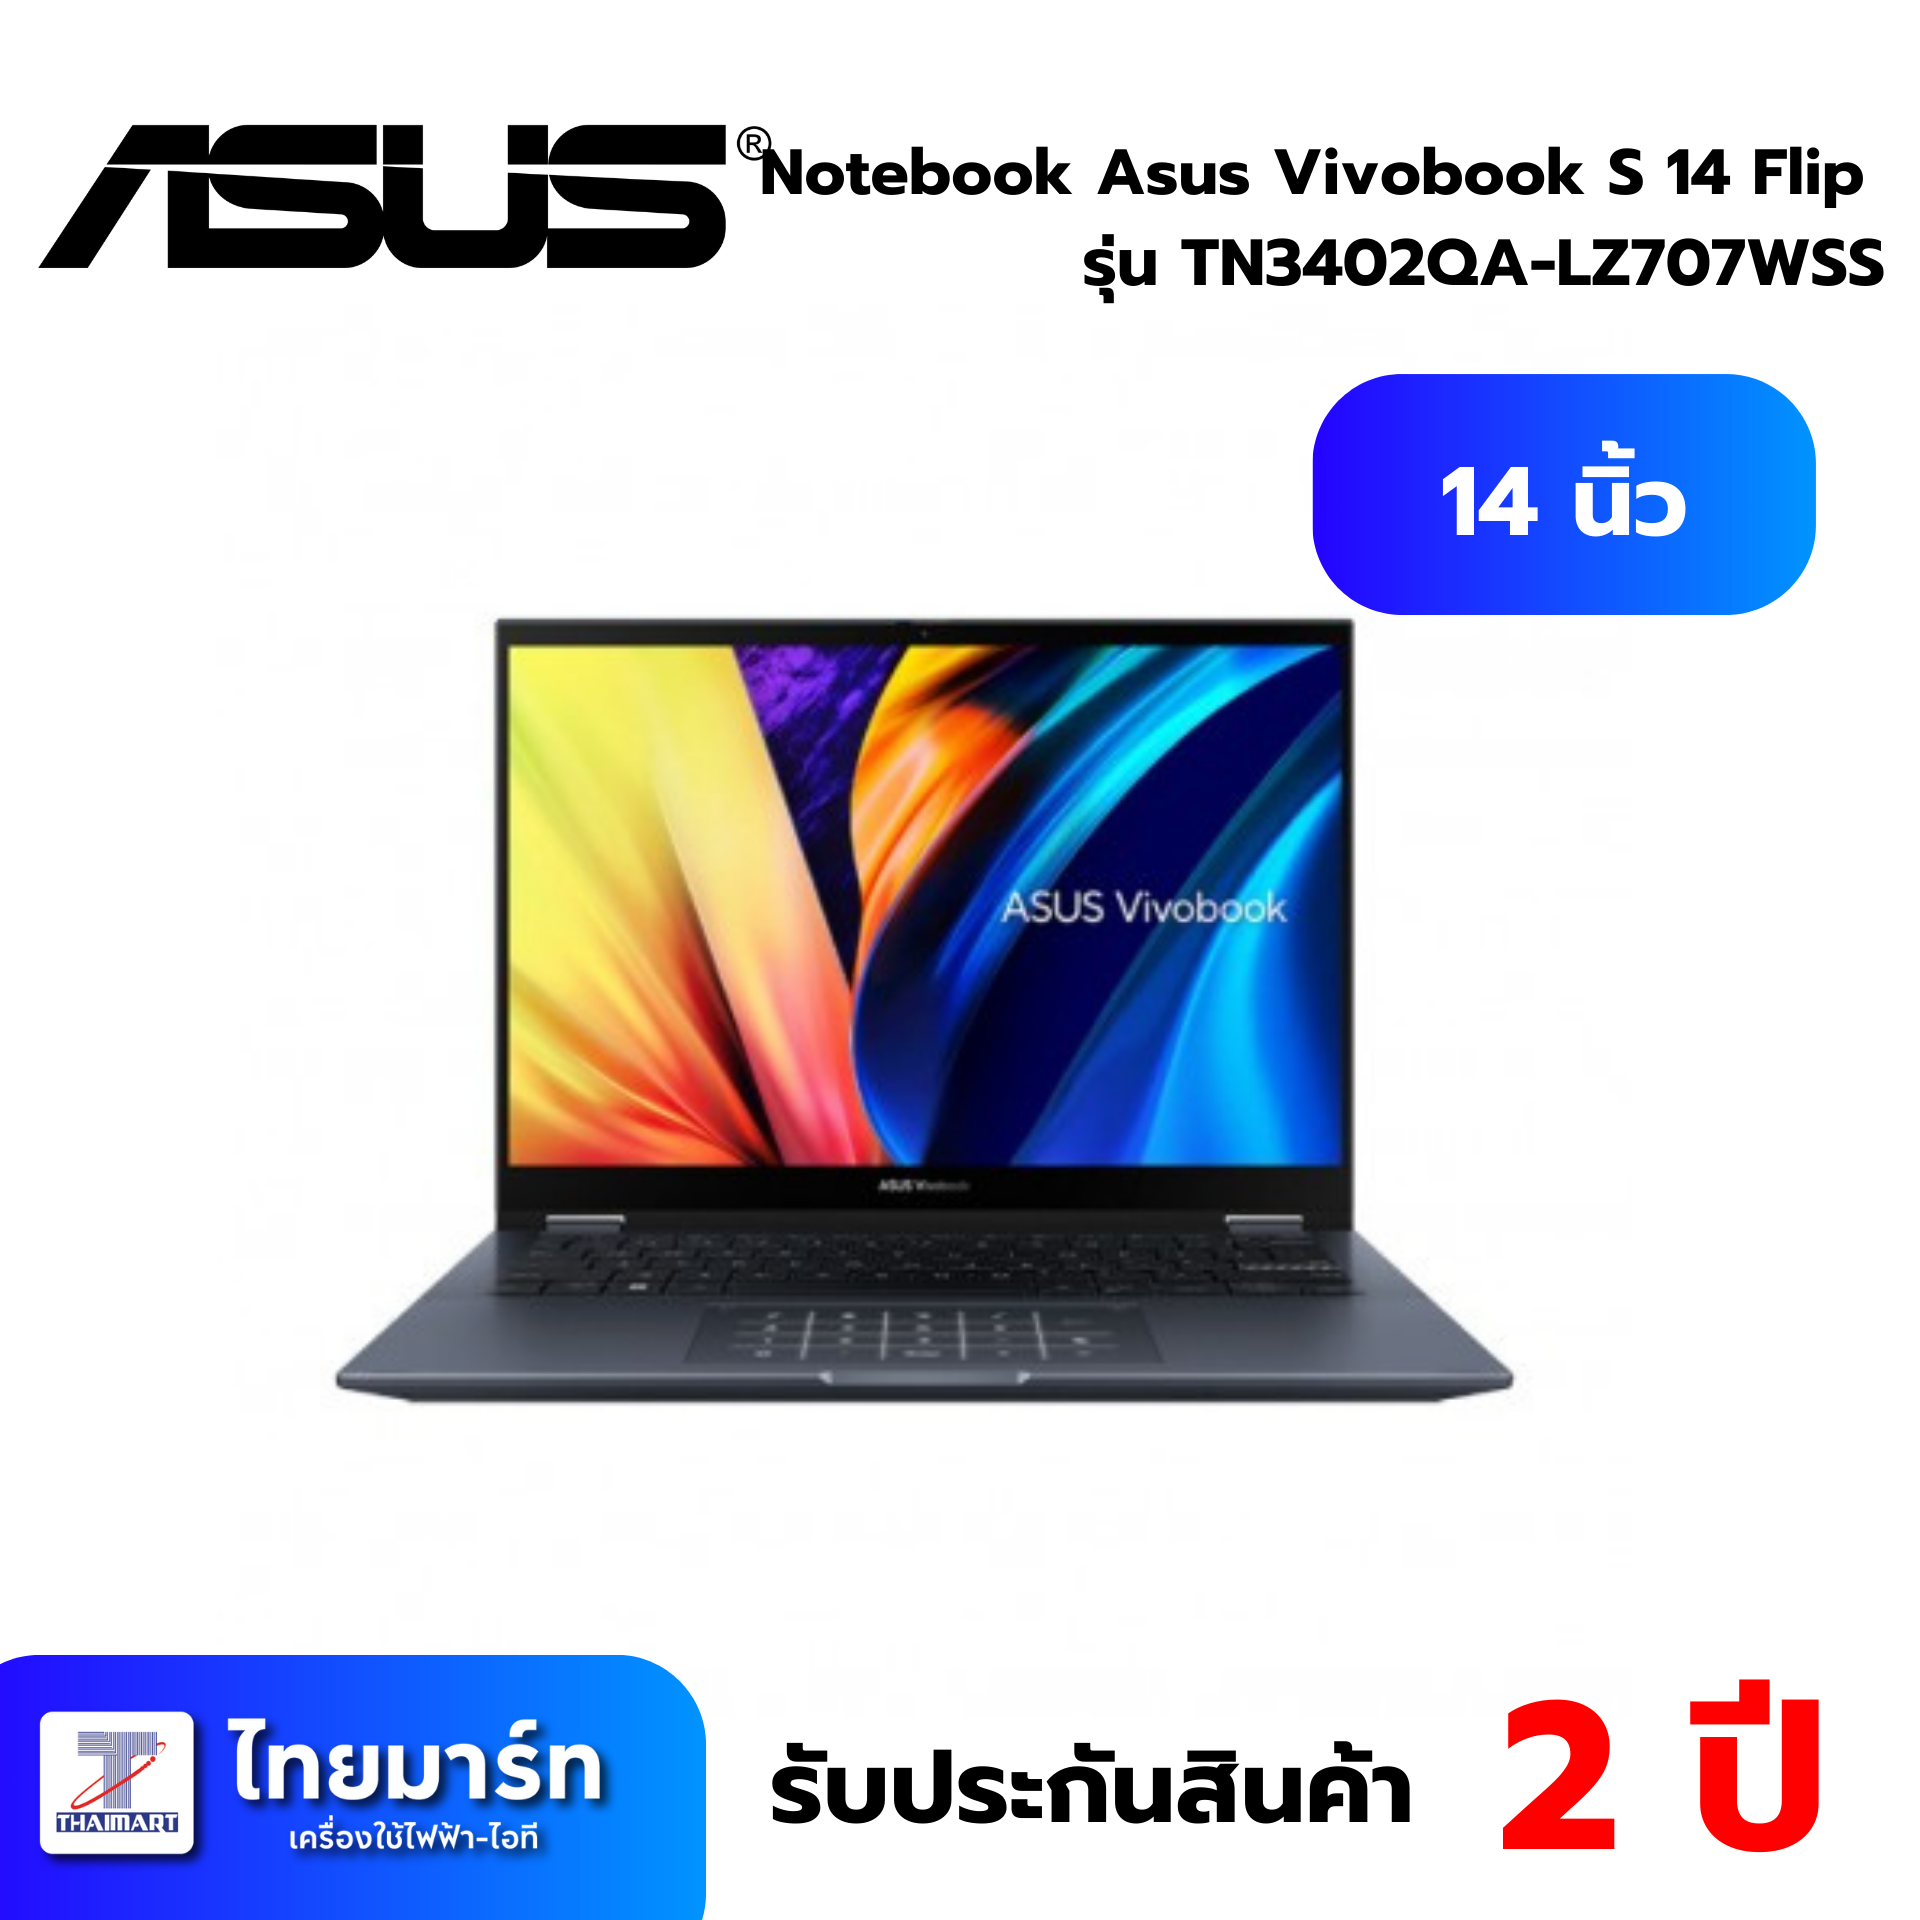 Notebook Asus Vivobook S 14 Flip TN3402QA-LZ707WS